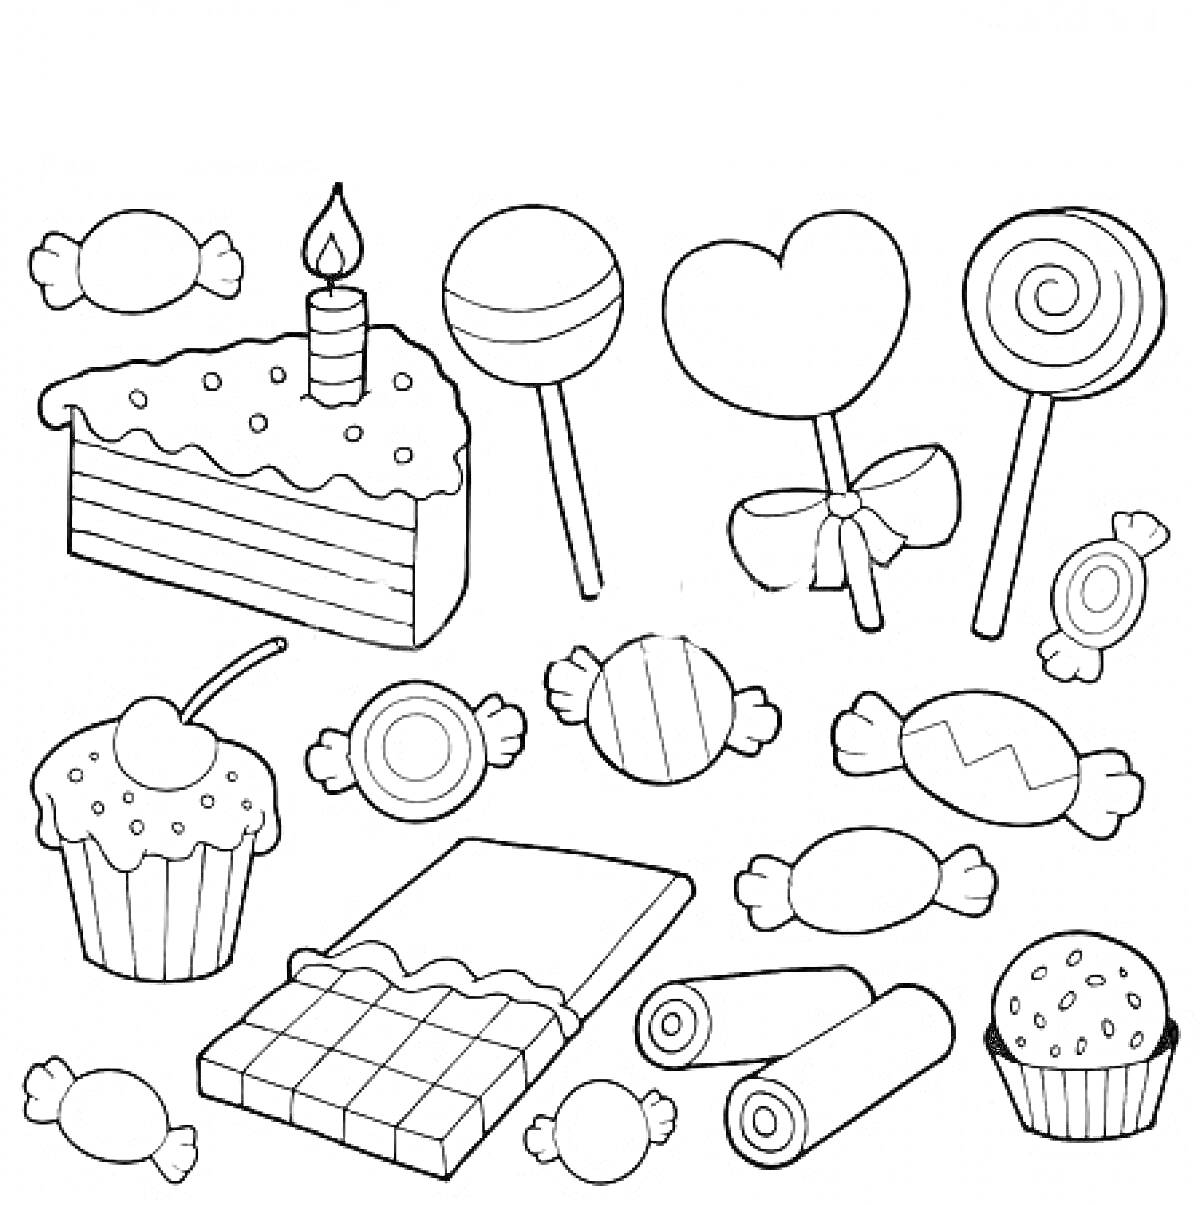  Сладости: торт с свечой, леденец на палочке, леденец-сердце с бантом, леденец-спираль, кекс с вишней, кекс с посыпкой, шоколадная плитка, роллы из карамели, конфеты в обертке